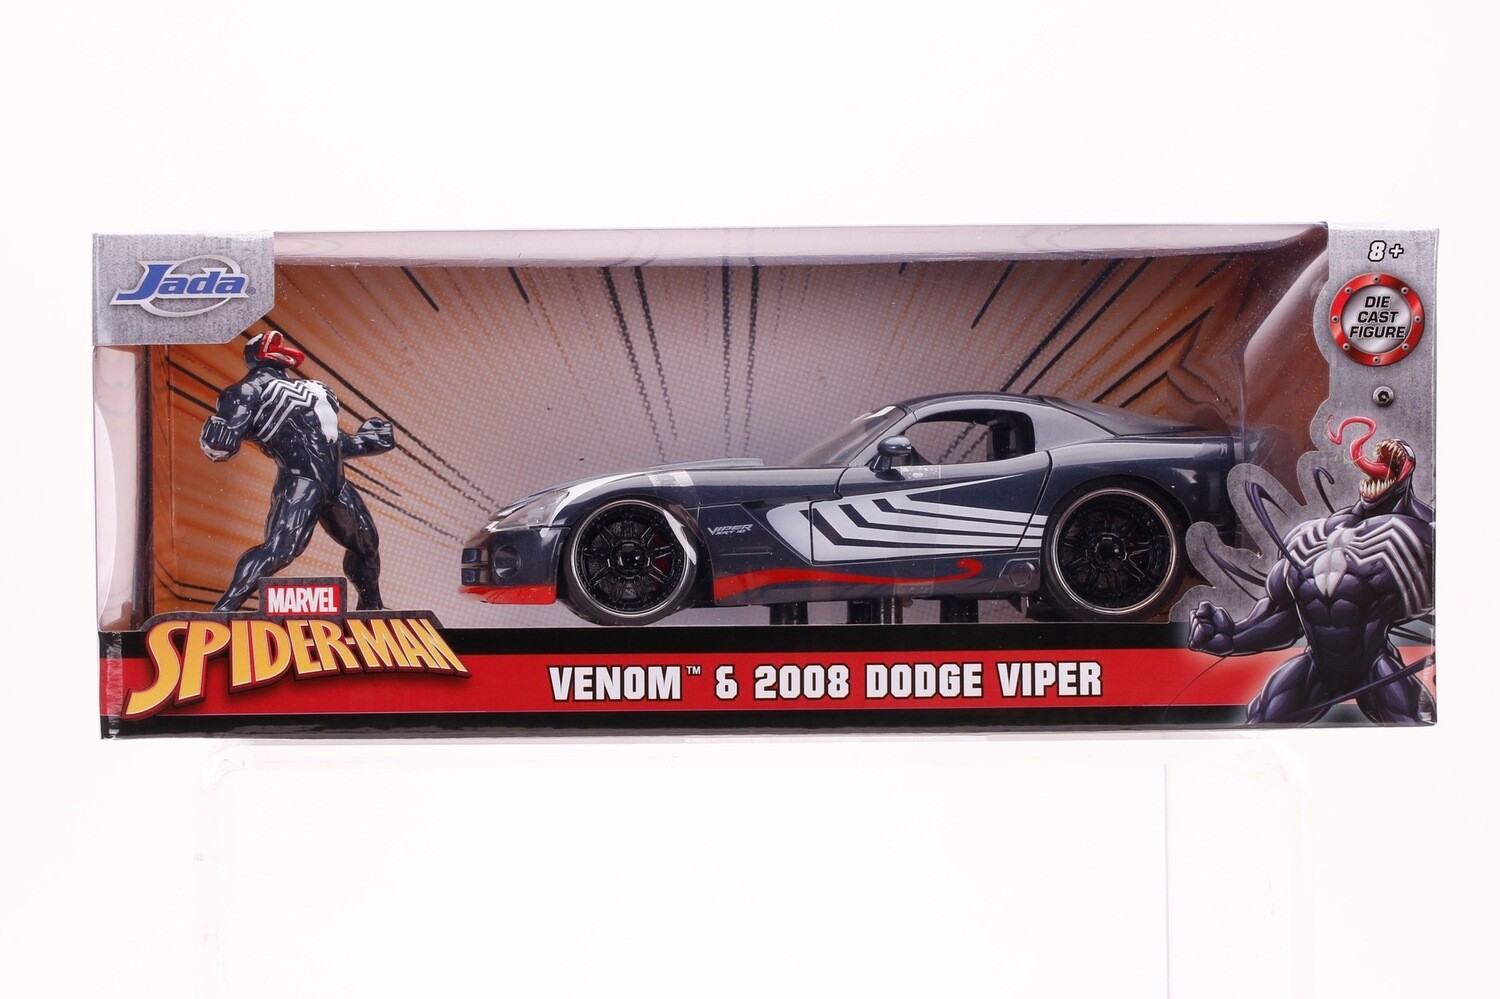 2008 Dodge Viper Venom